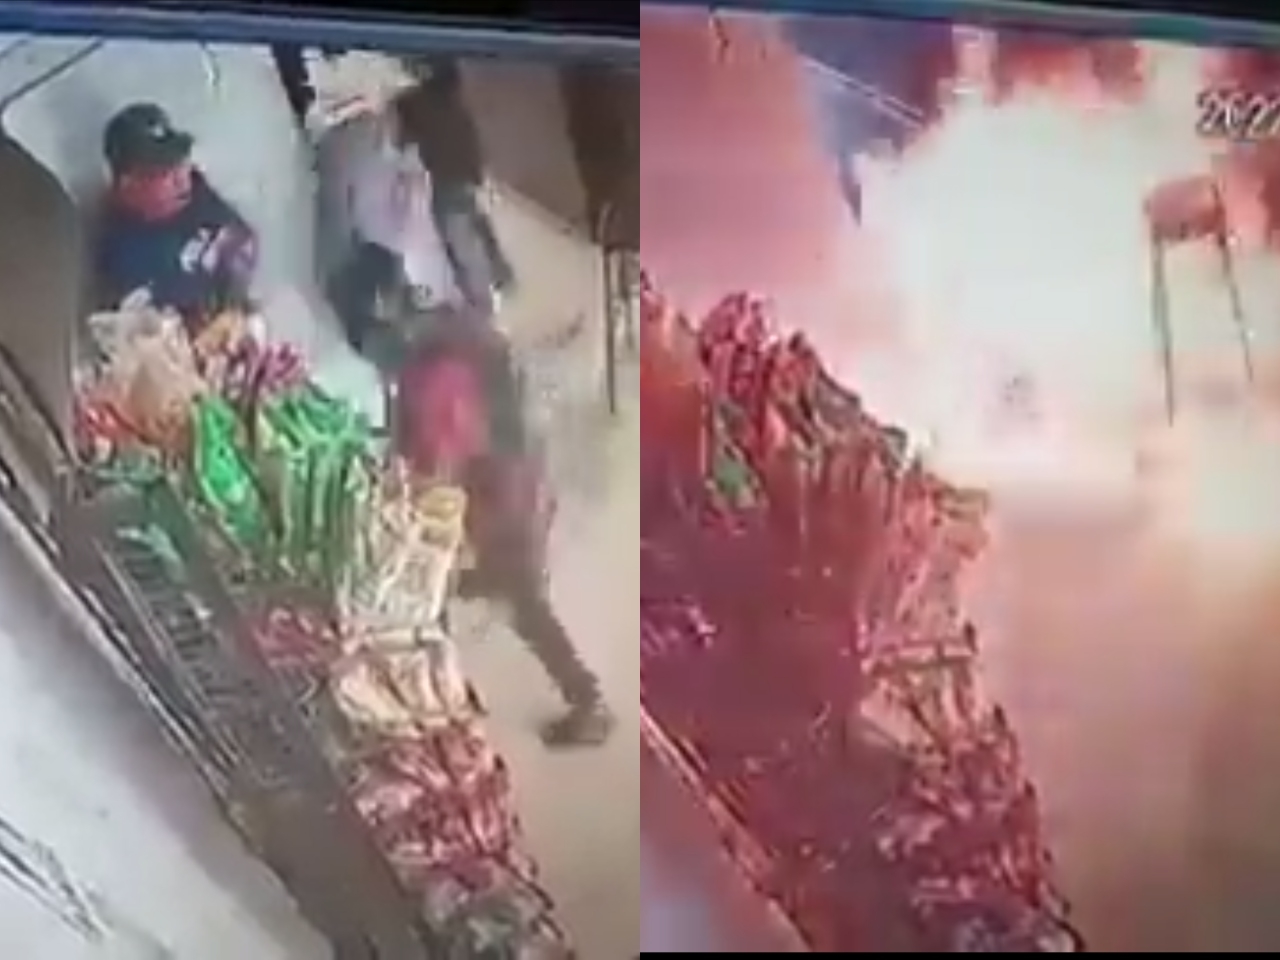 Los agresores huyeron del negocio, al parecer una tienda de abarrotes, luego de haber iniciado el fuego que dejó daños en el lugar